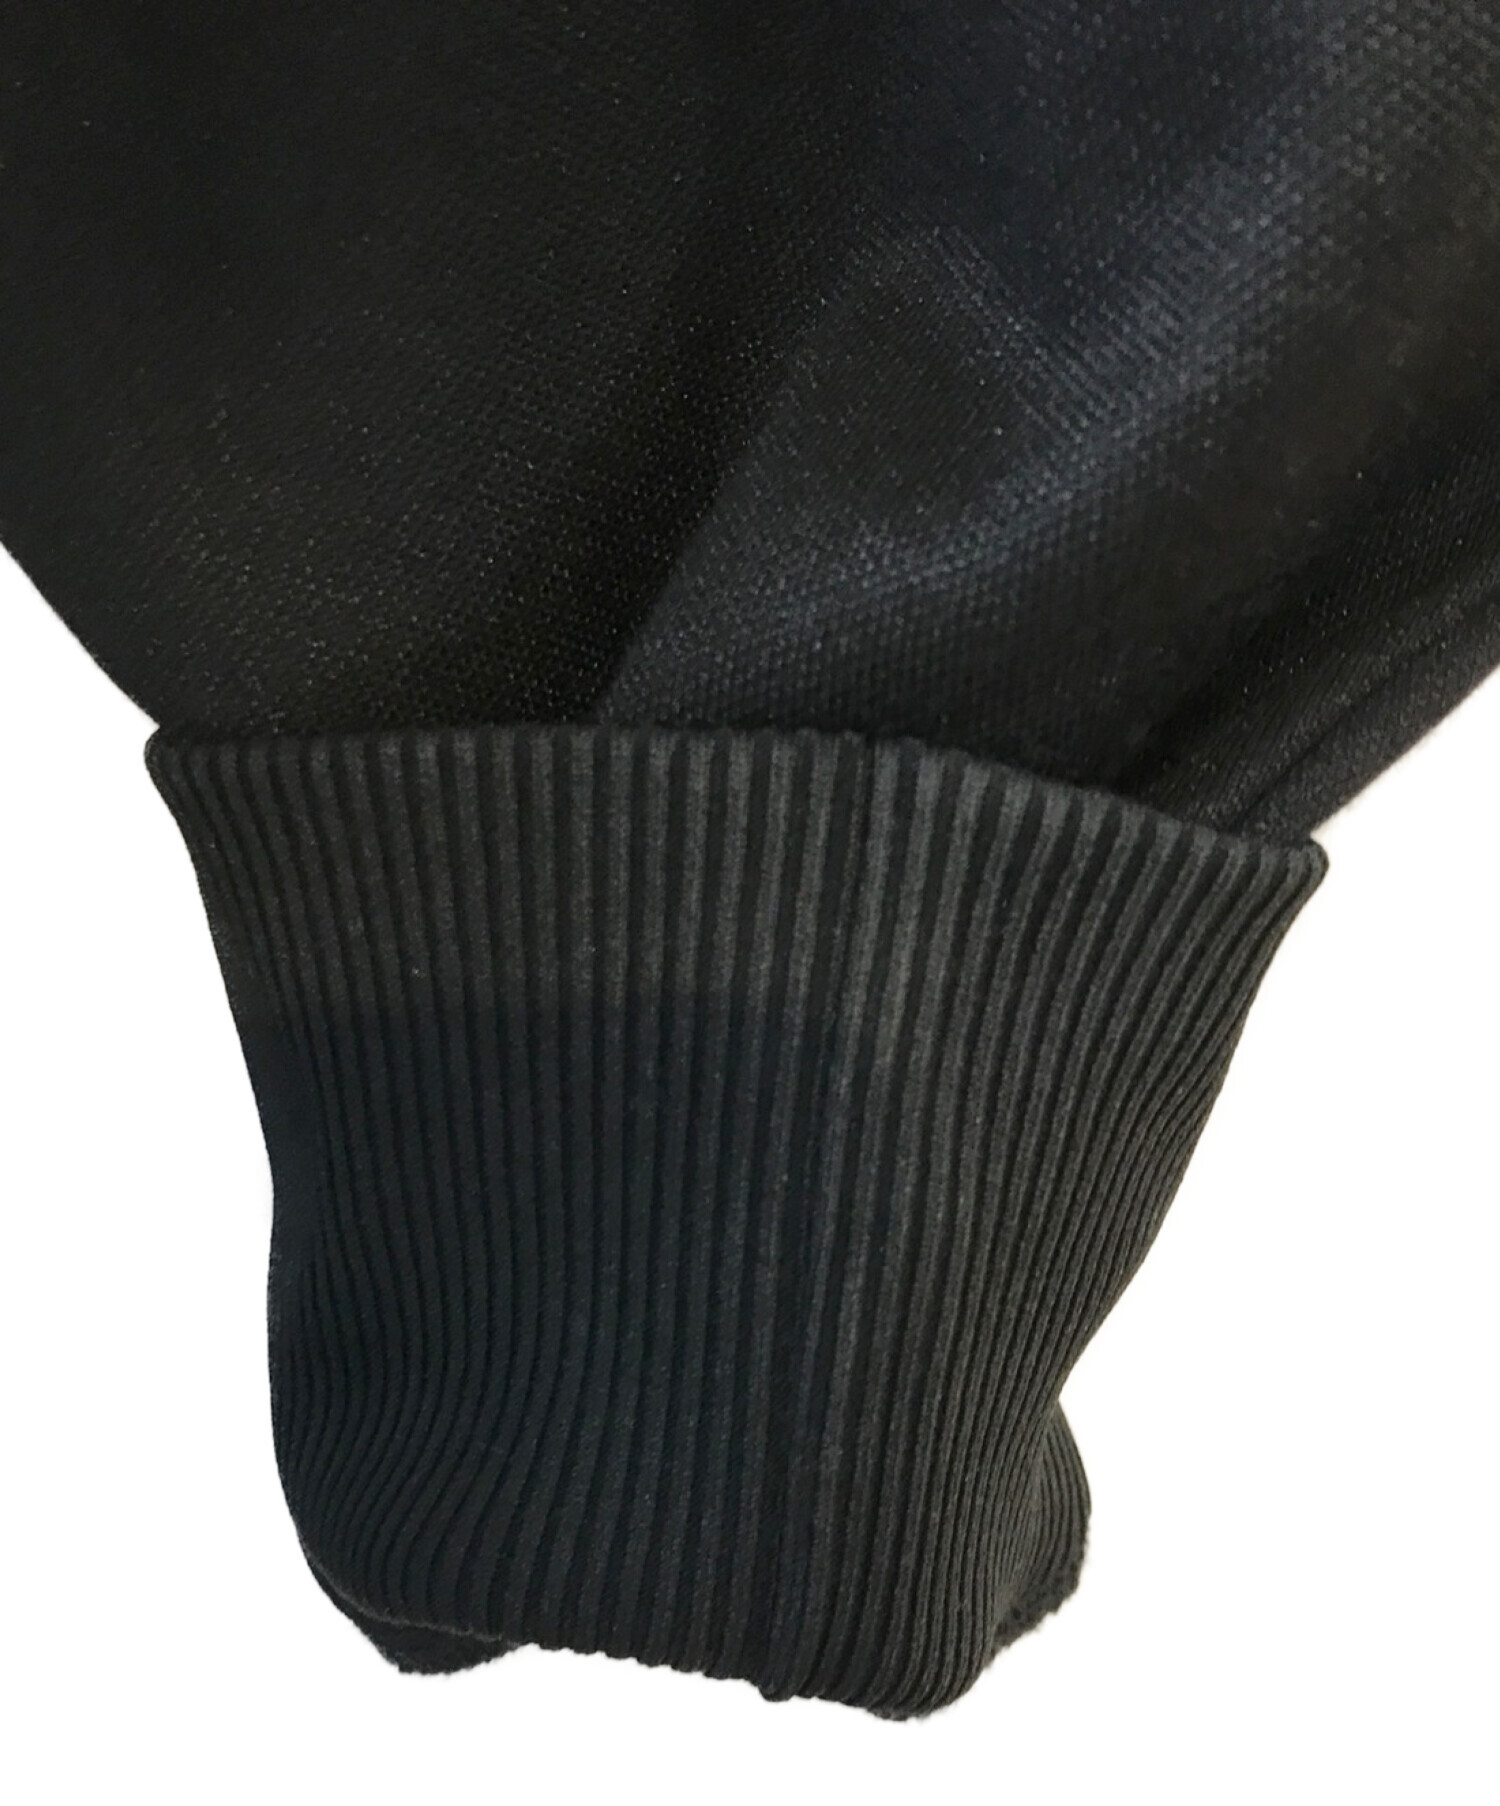 adidas (アディダス) Yohji Yamamoto pour homme (ヨウジヤマモト プールオム) Limited 200  P/BECKENBAUER TRACK TOP ブラック サイズ:L